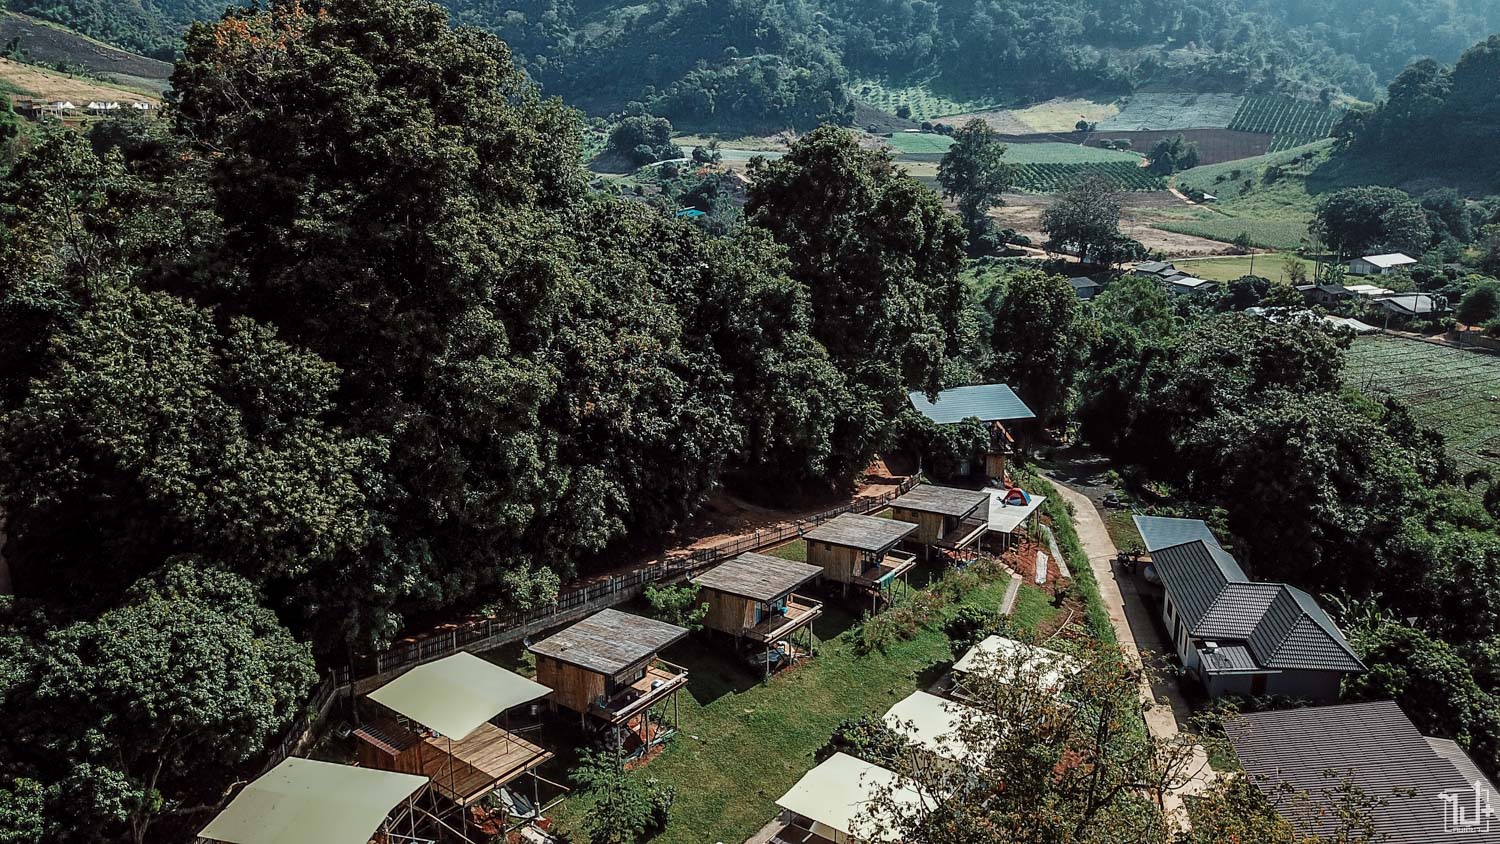 บ้านว้าวด้า, ที่เที่ยวเชียงใหม่, เที่ยวสวนส้ม, ที่พักเชียงใหม่, ที่เที่ยวแม่แตง, ที่พักแม่แตง, WowdaHomestay, Wowda, Homestay, Chiangmai